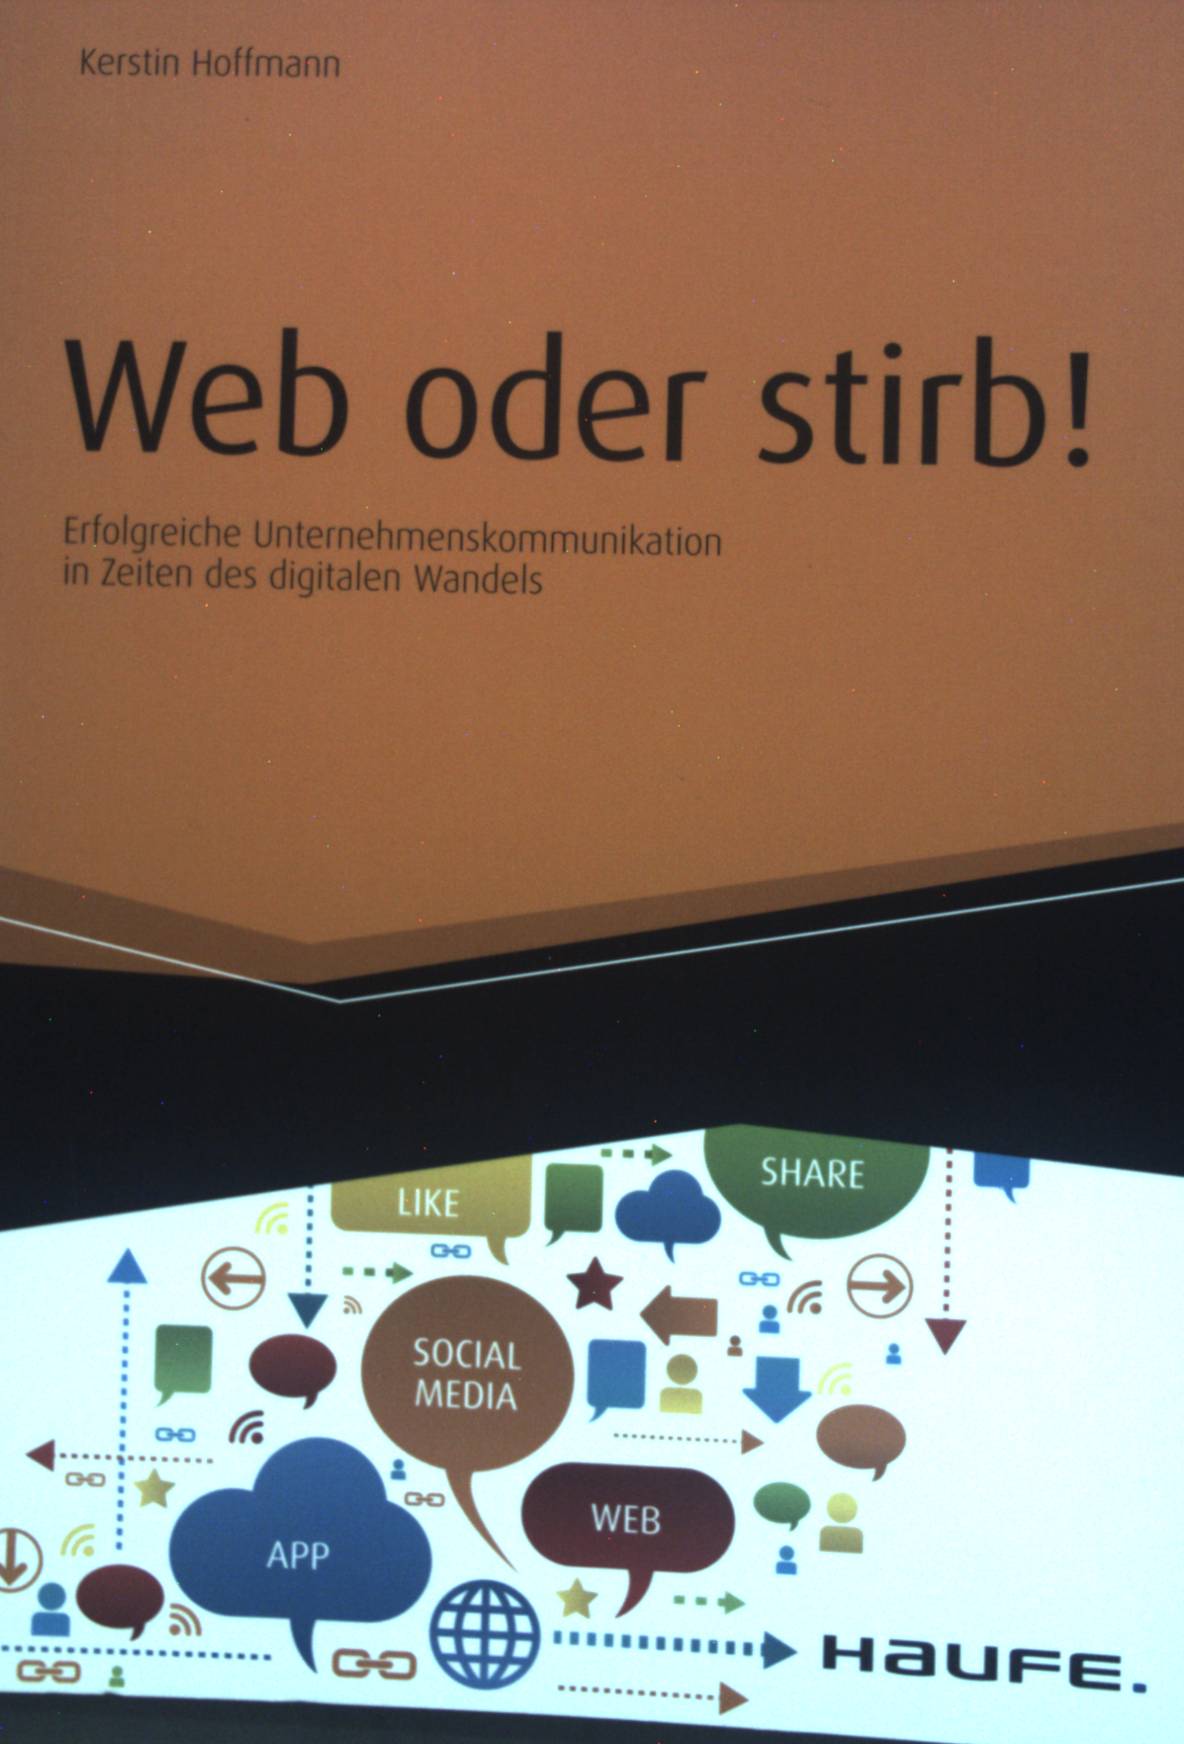 Web oder stirb! : erfolgreiche Unternehmenskommunikation in Zeiten des digitalen Wandels. - Hoffmann, Kerstin